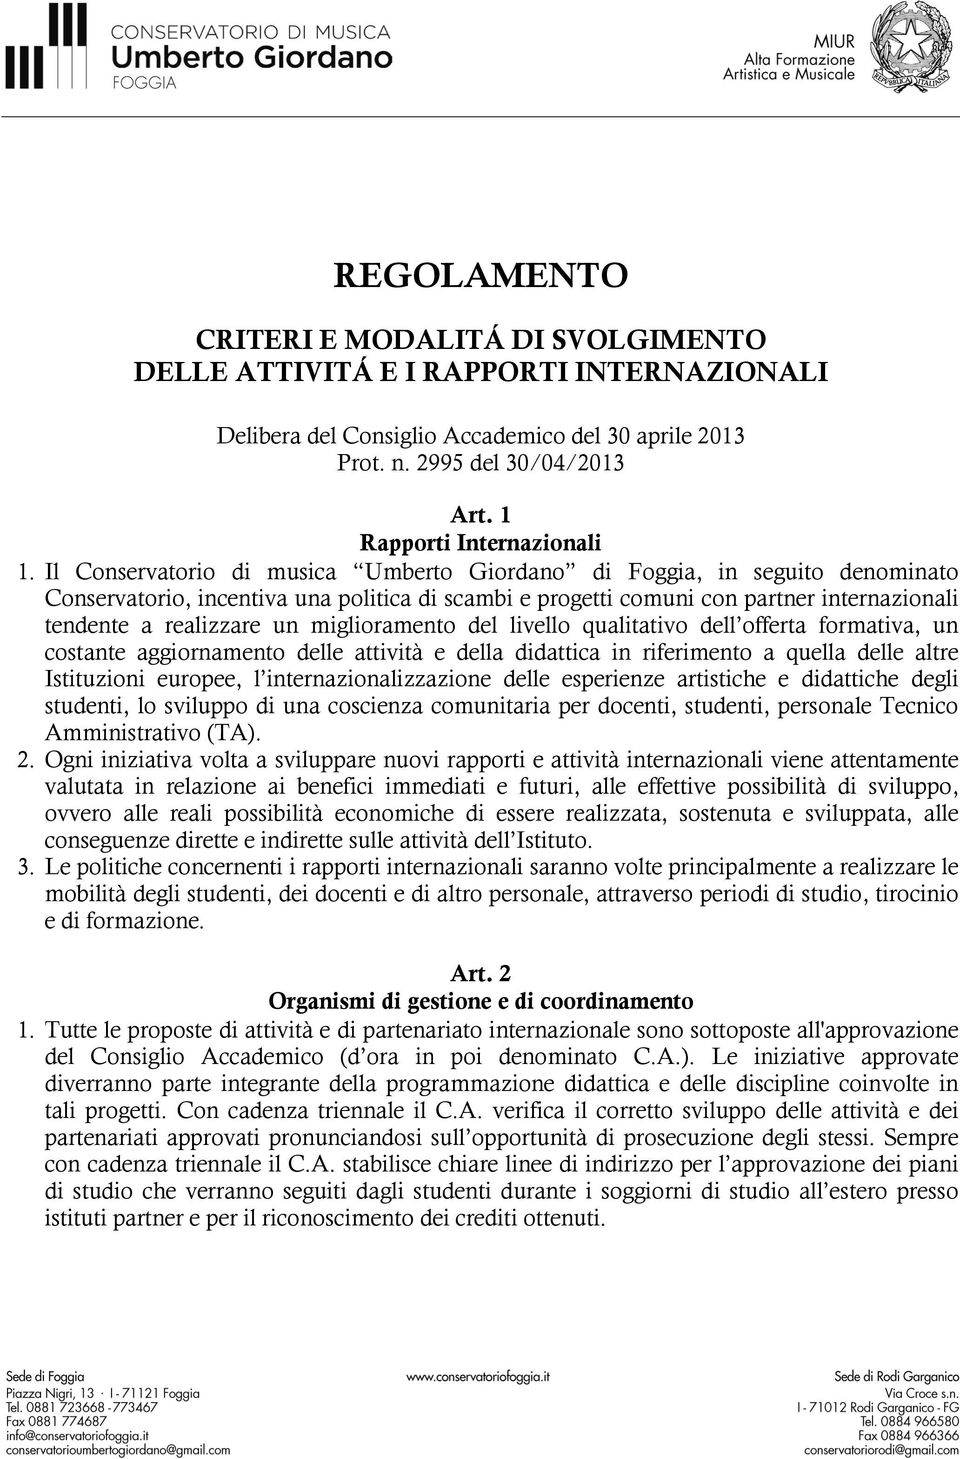 Il Conservatorio di musica Umberto Giordano di Foggia, in seguito denominato Conservatorio, incentiva una politica di scambi e progetti comuni con partner internazionali tendente a realizzare un